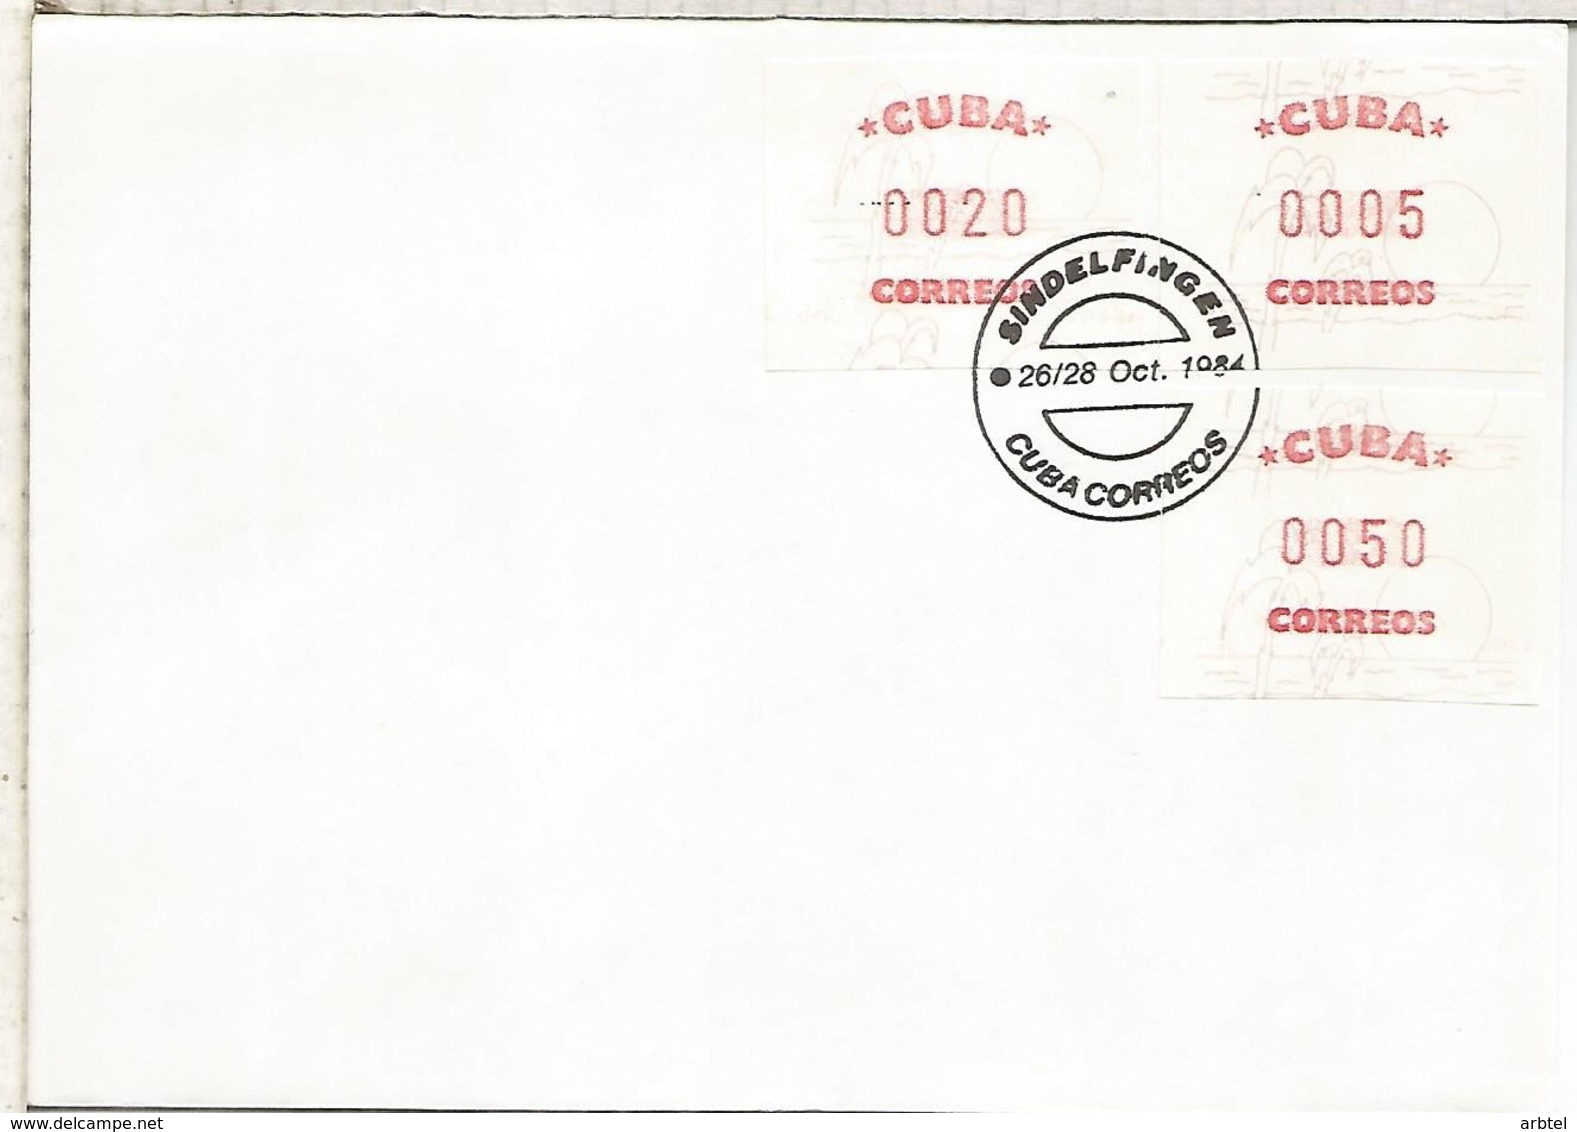 CUBA FDC ATM 1984 BRIEFMARKEN MESSE SINDELFINGEN - Covers & Documents